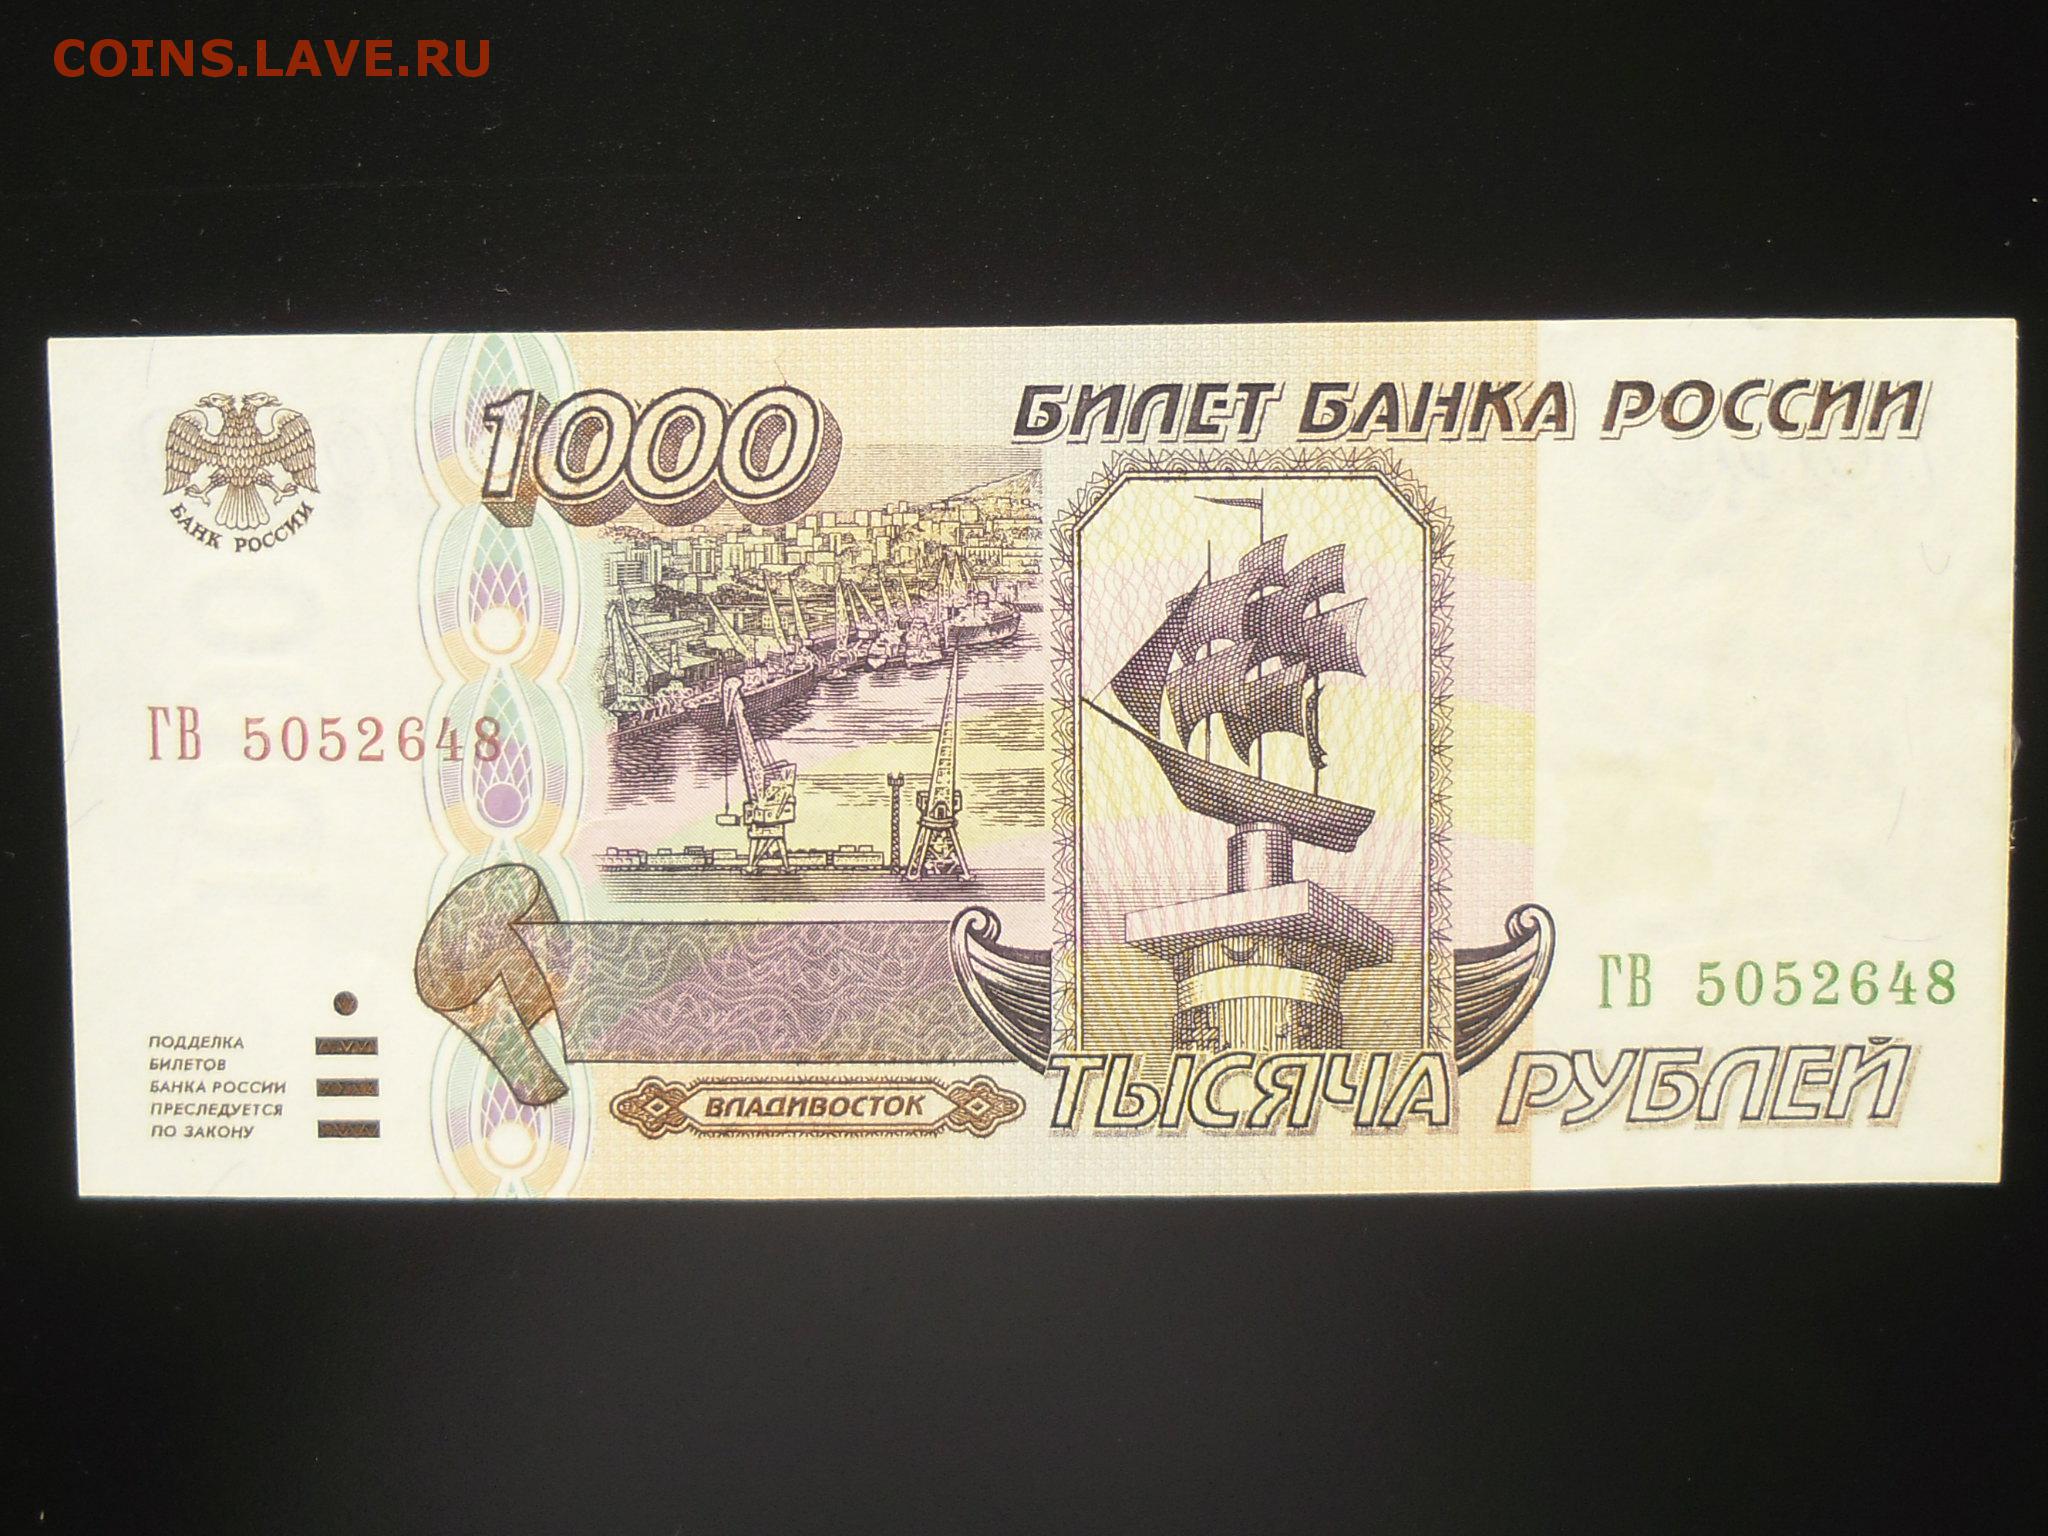 1000 рублях в г. 1000 Рублей 1995 года. Купюры рублей 1995. Банкнота 1000 рублей 1995 года. Купюры денег 1995 года.